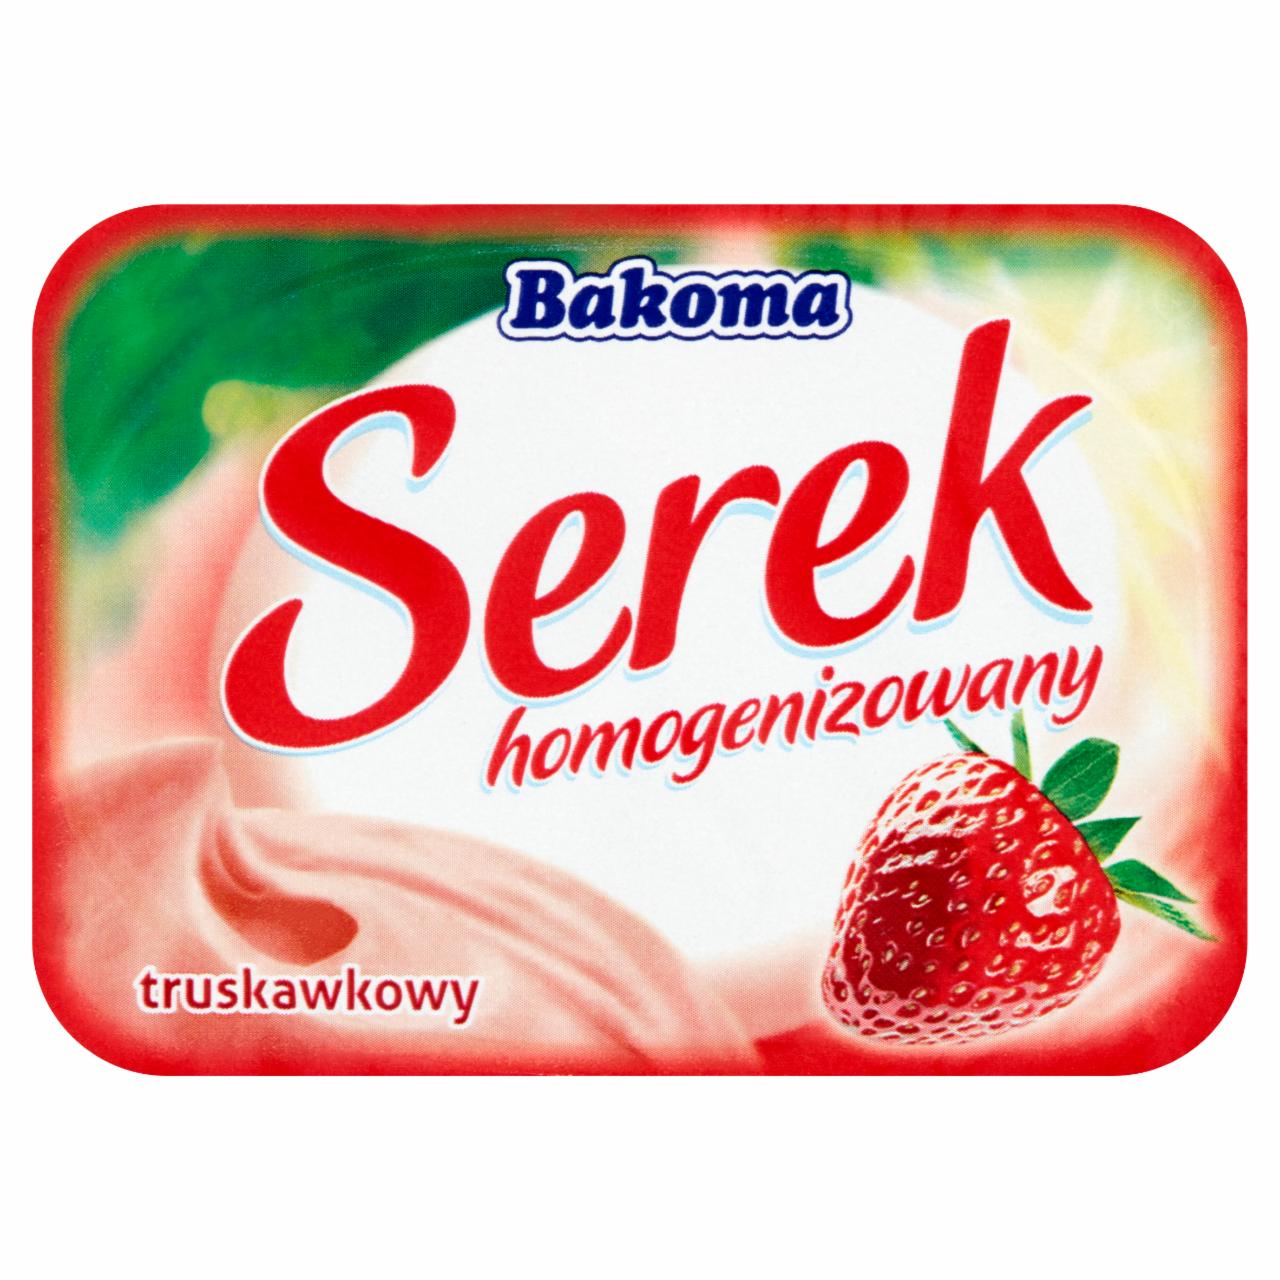 Zdjęcia - Bakoma Serek homogenizowany truskawkowy 140 g